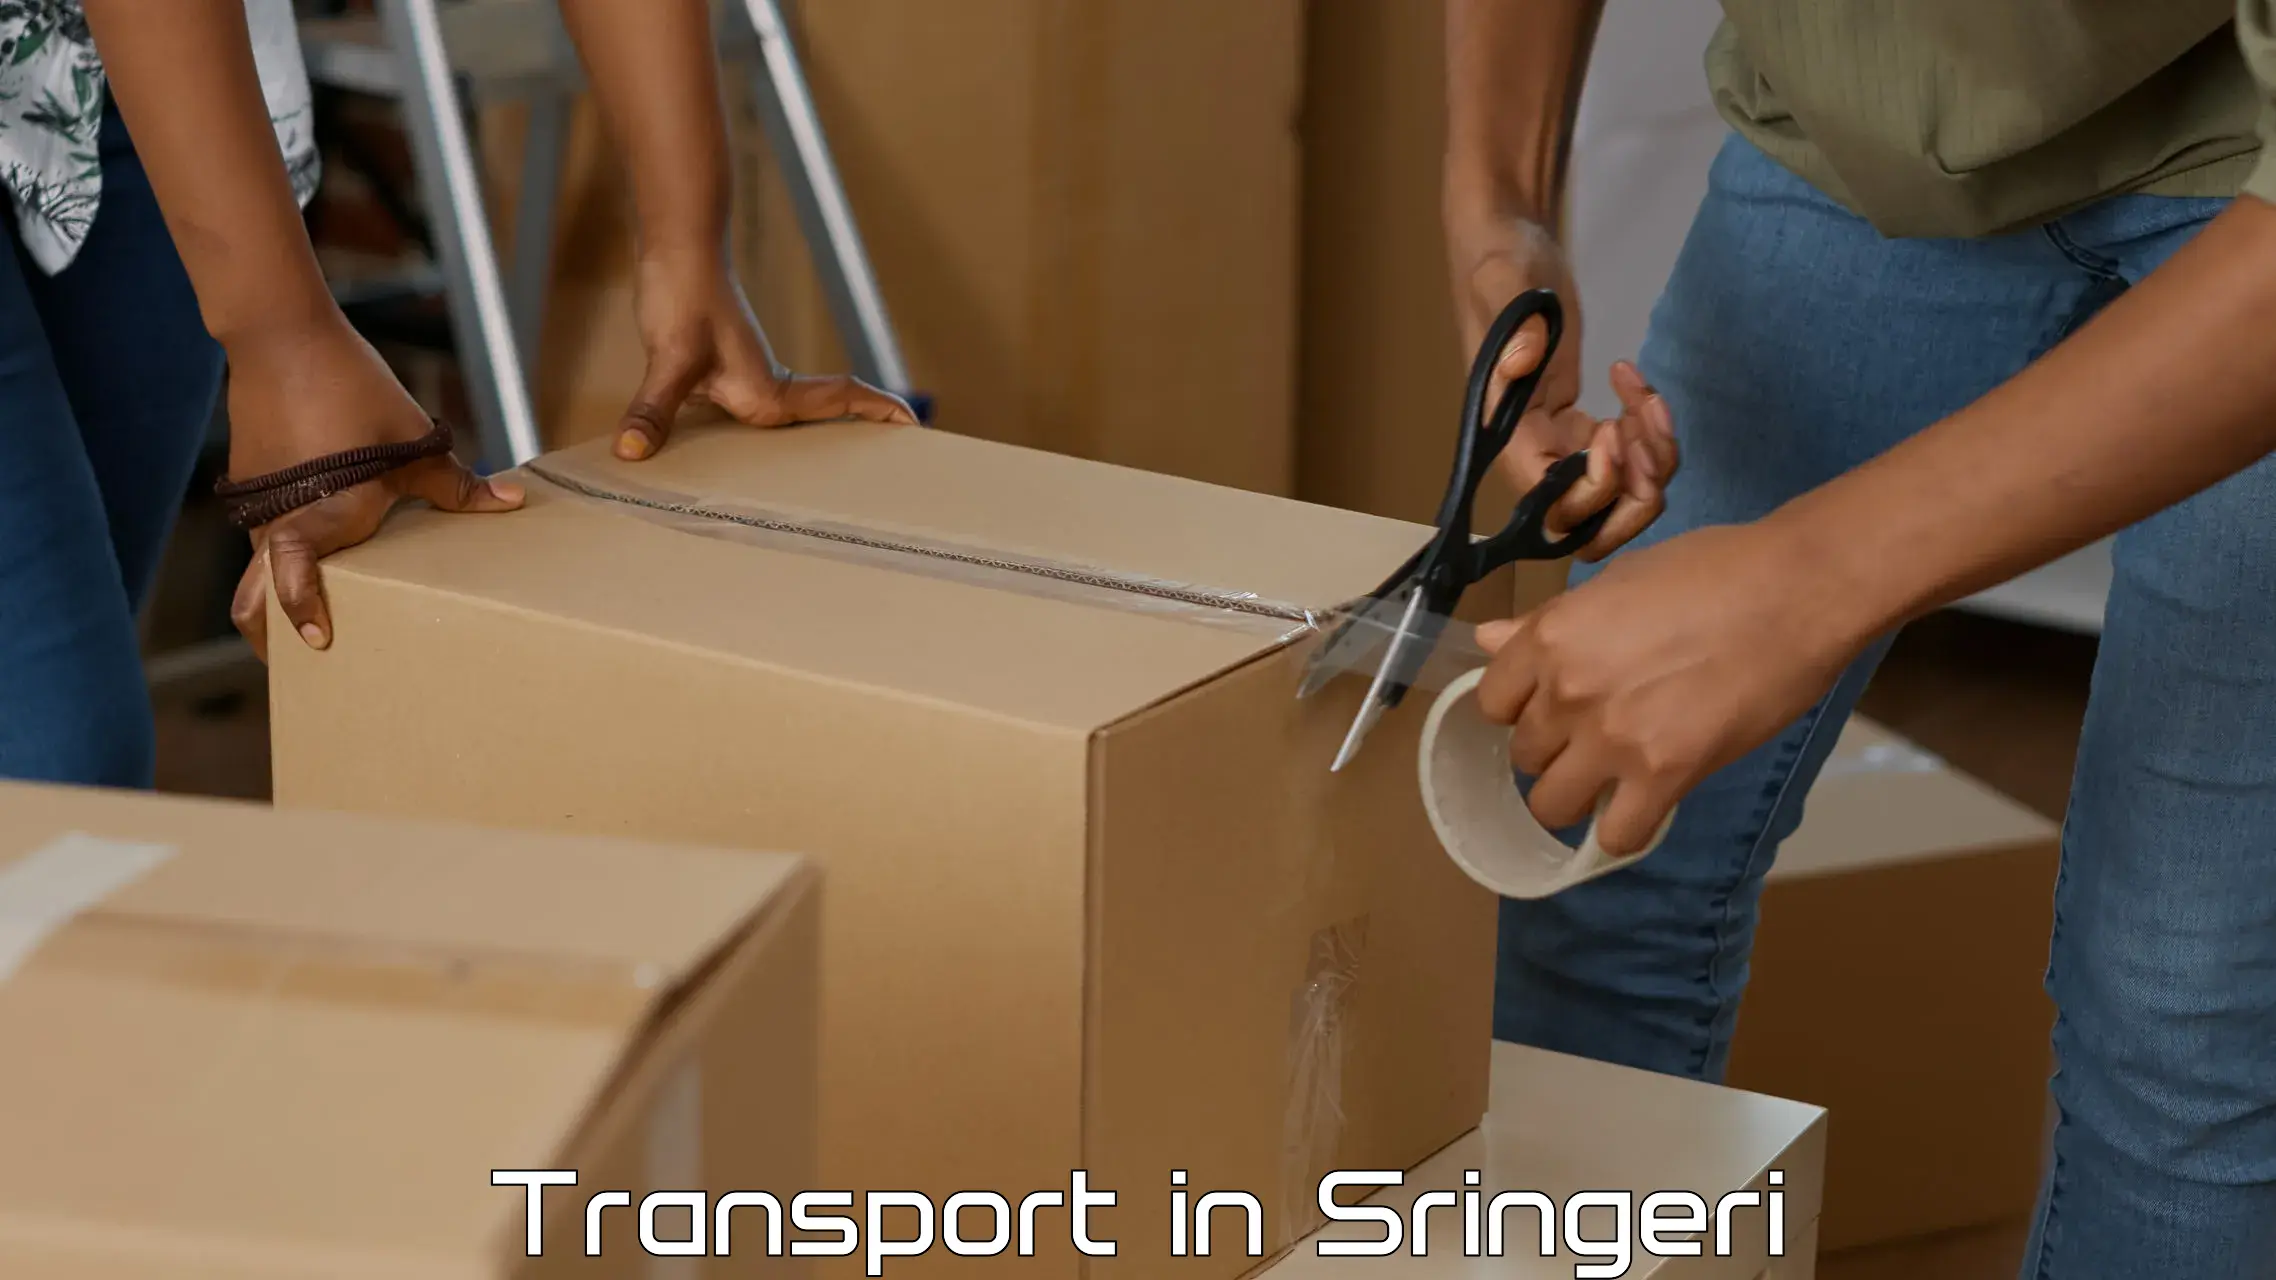 Intercity goods transport in Sringeri